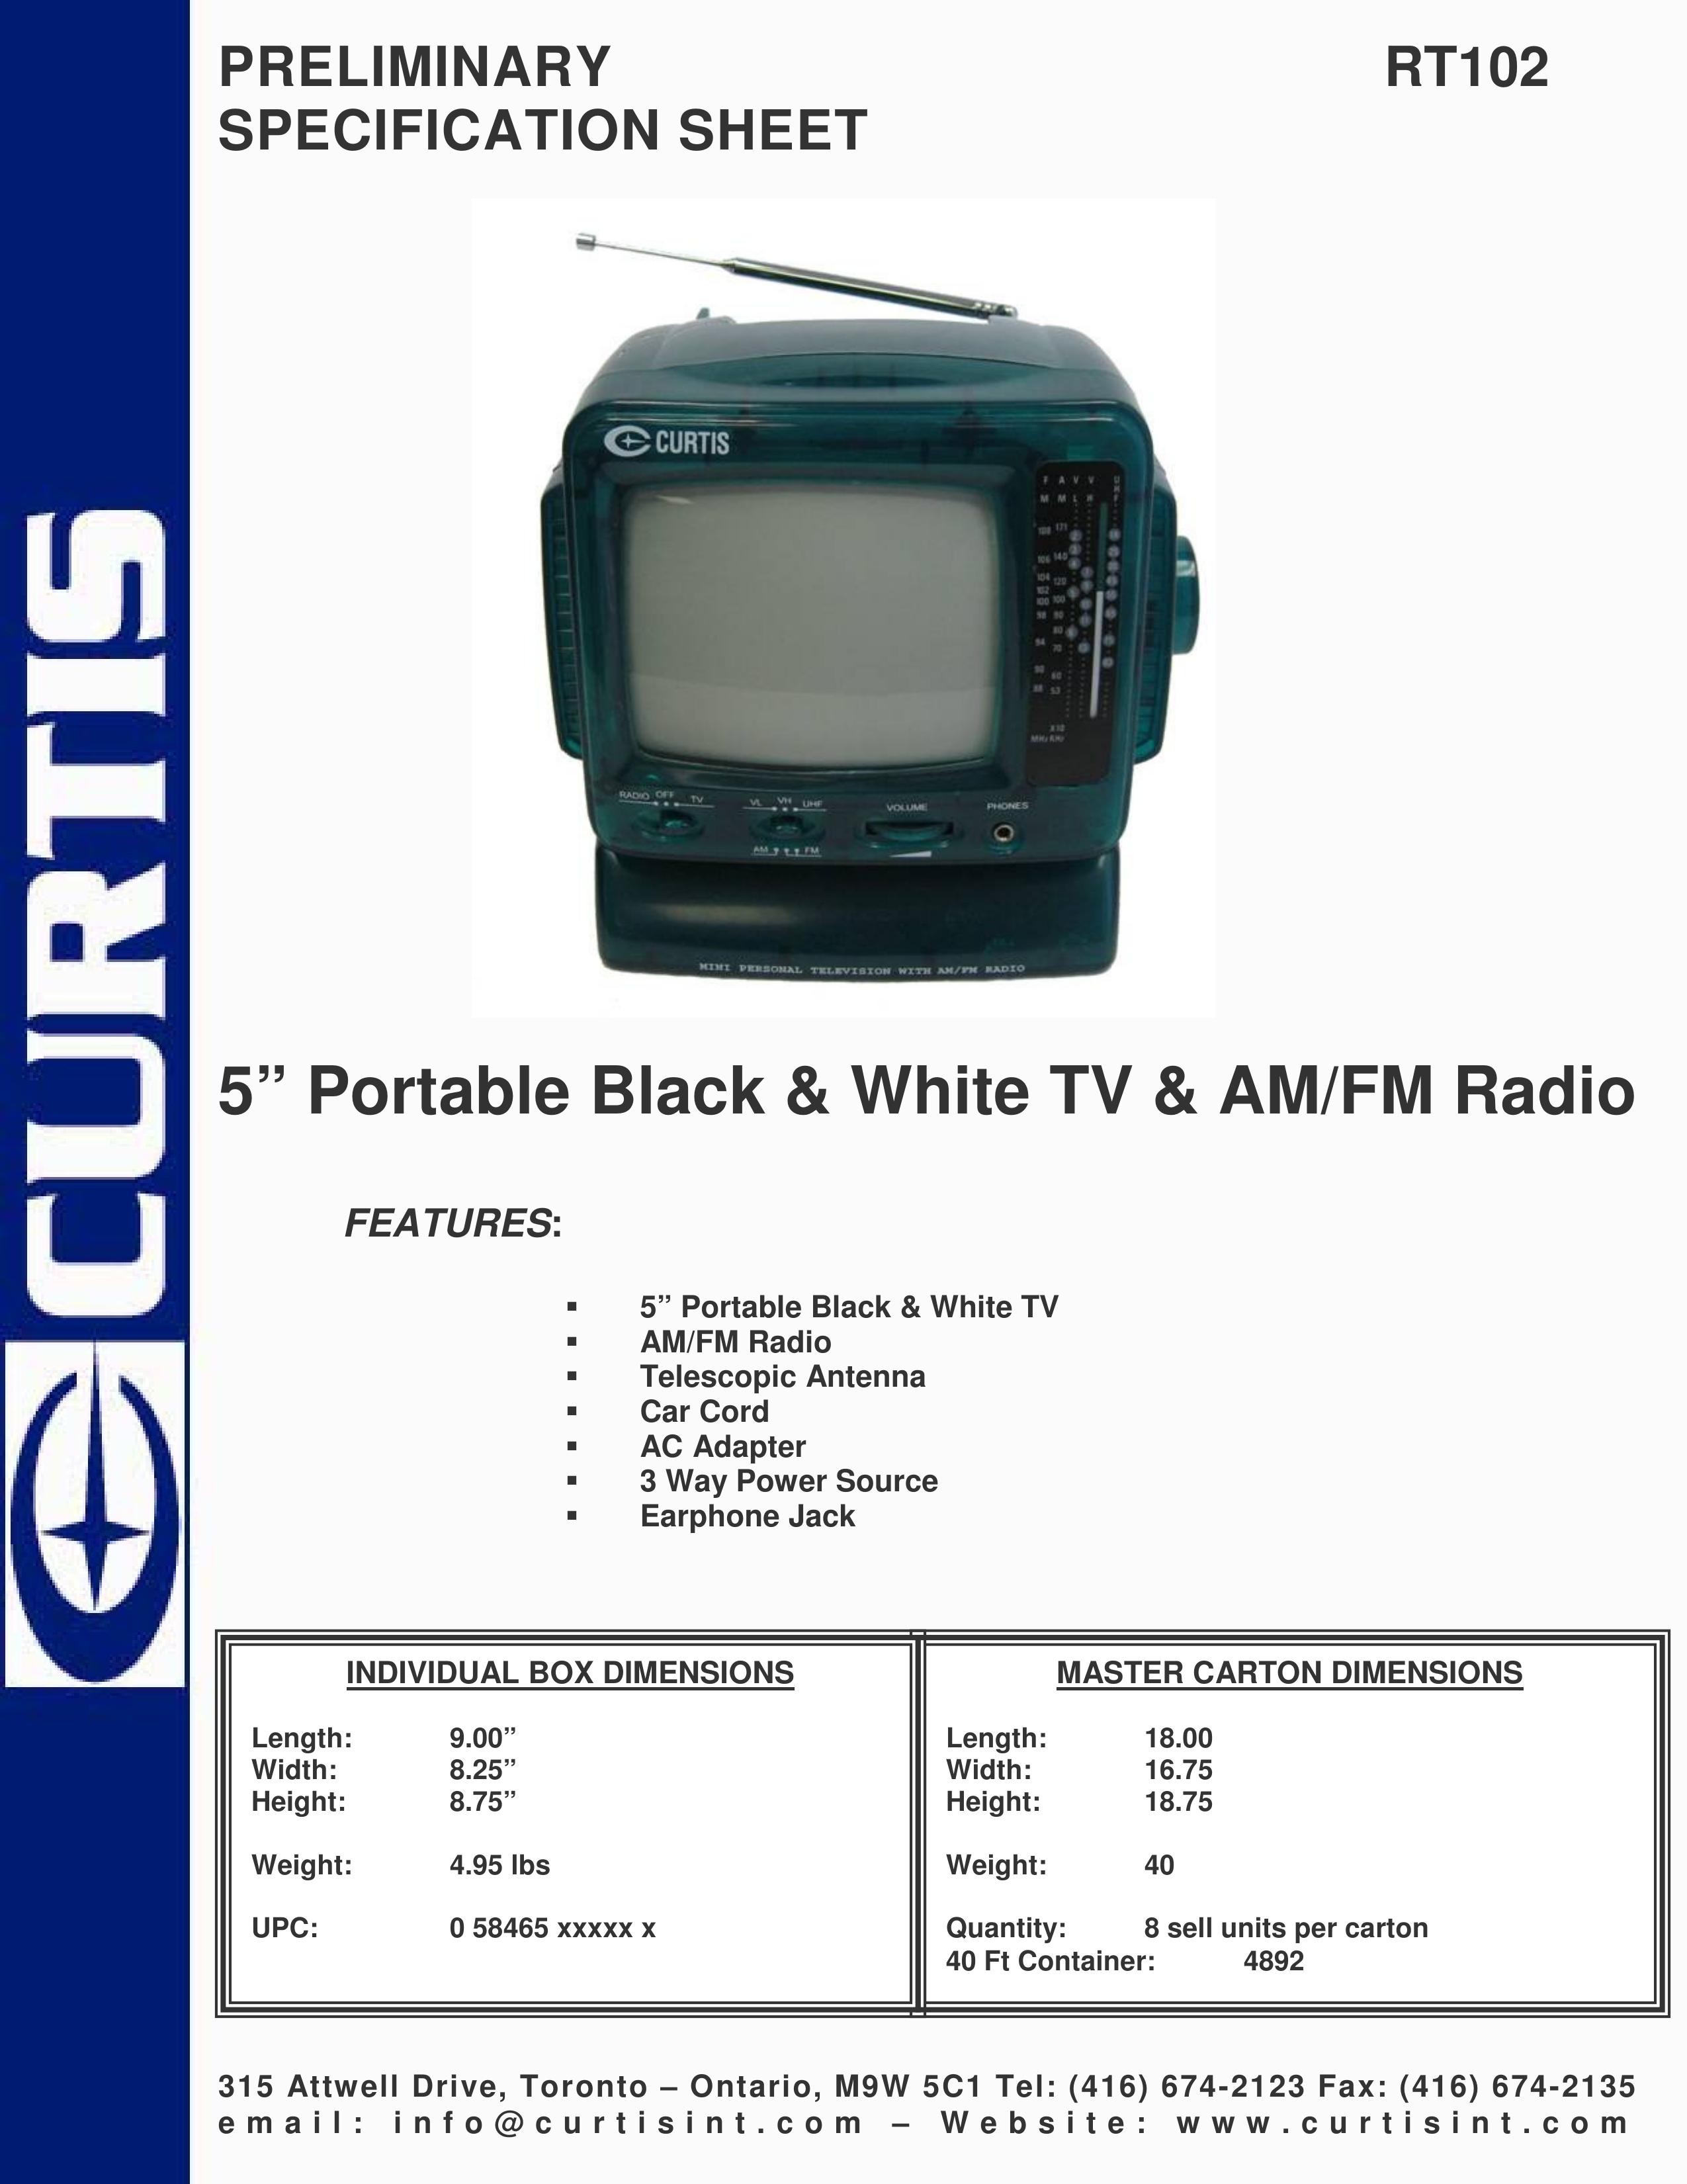 Curtis RT102 Handheld TV User Manual